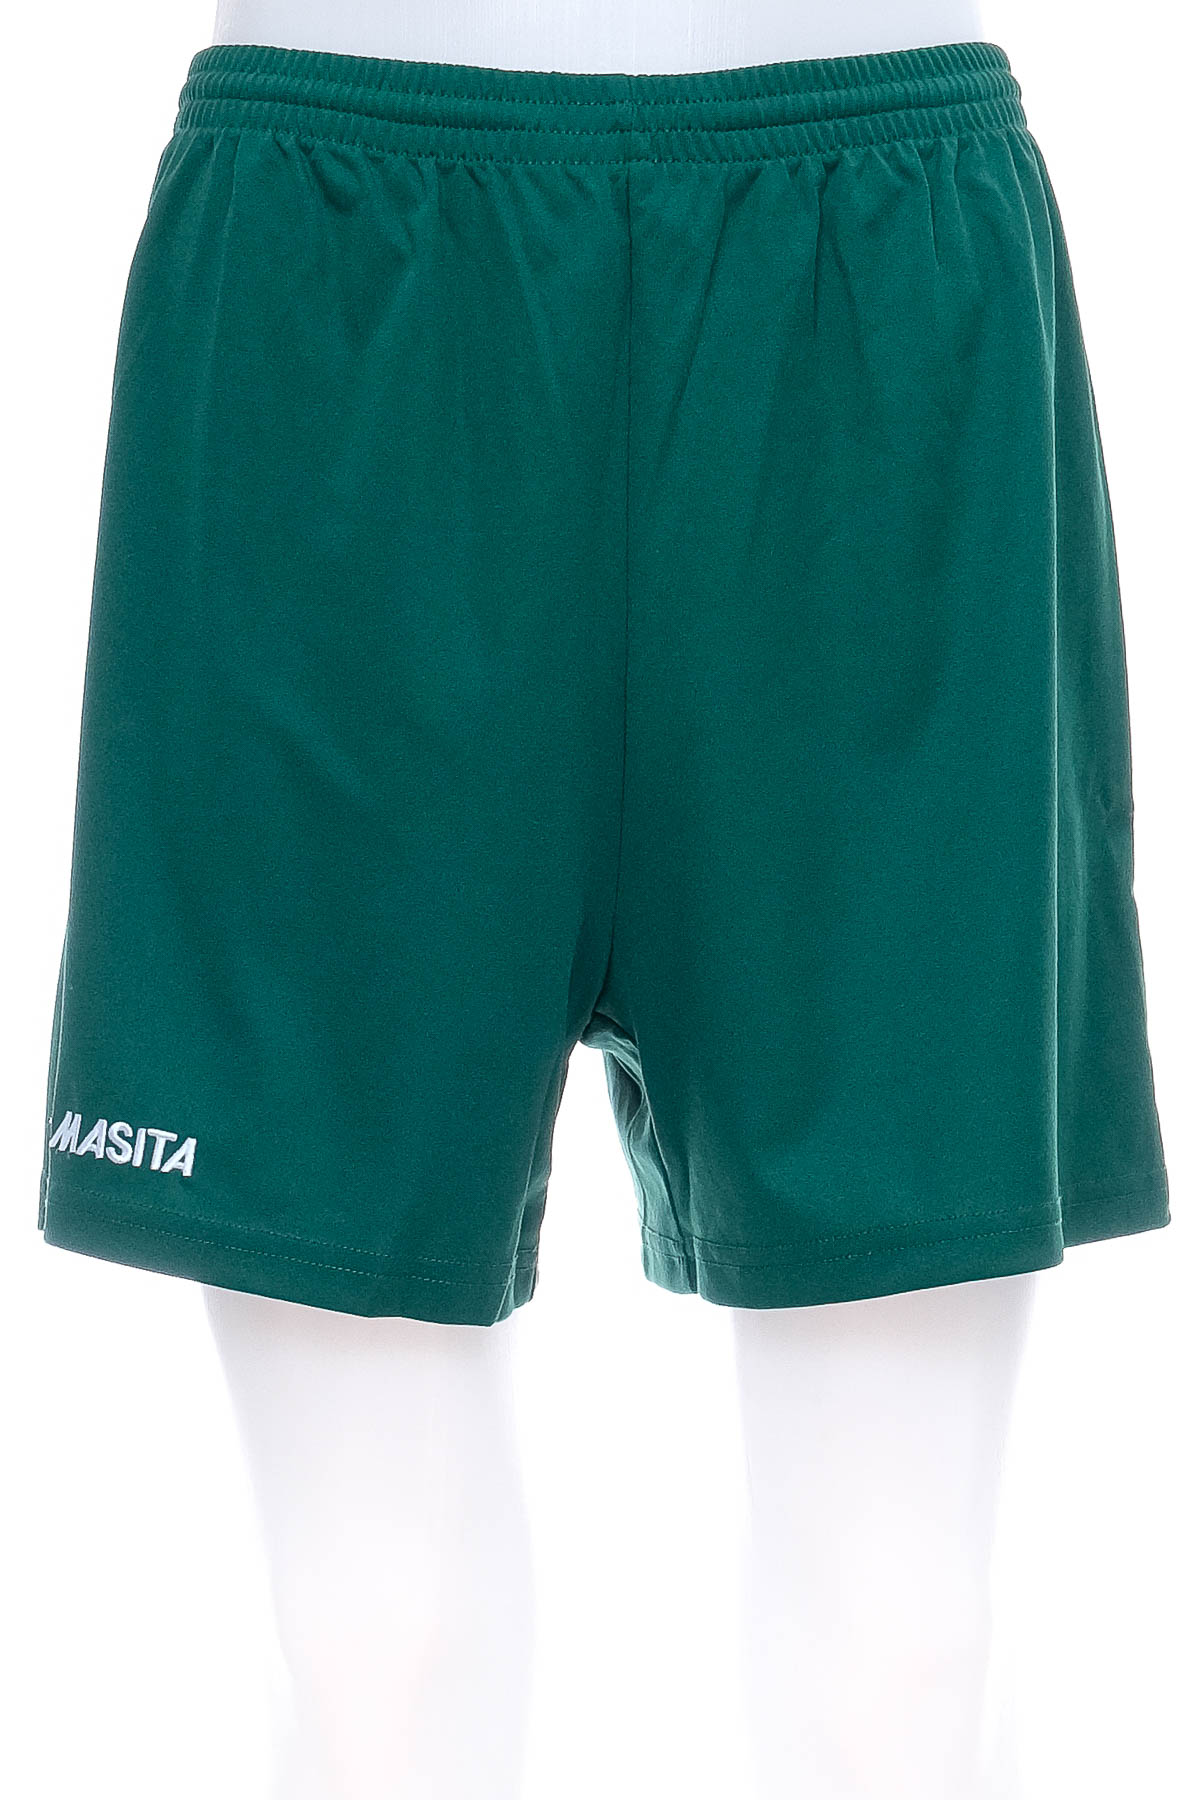 Men's shorts - Masita - 0